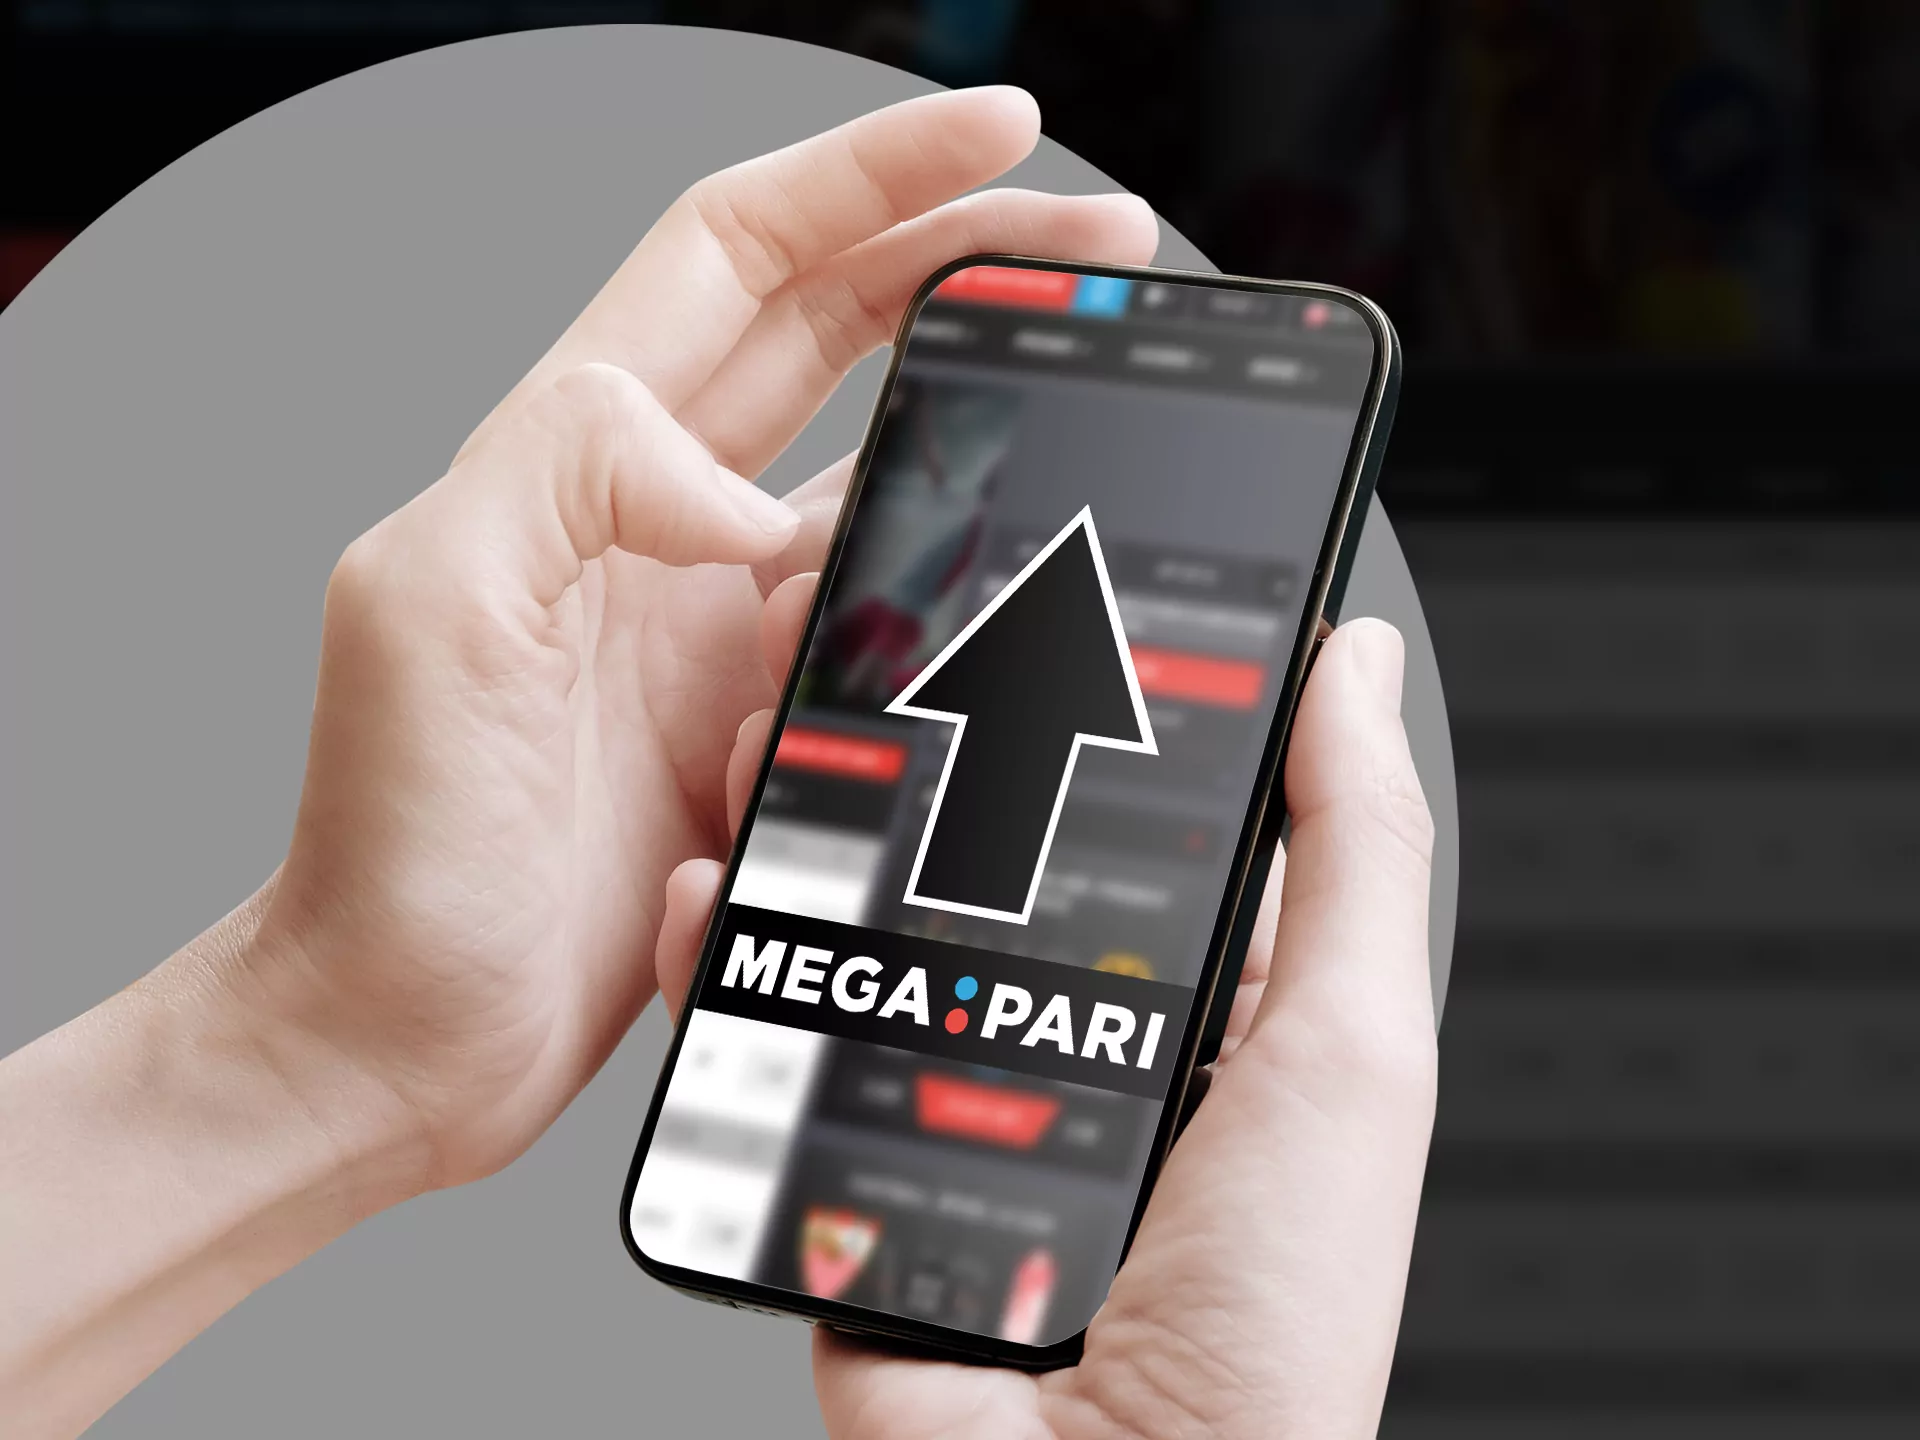 Update Megapari app for better betting expirience.